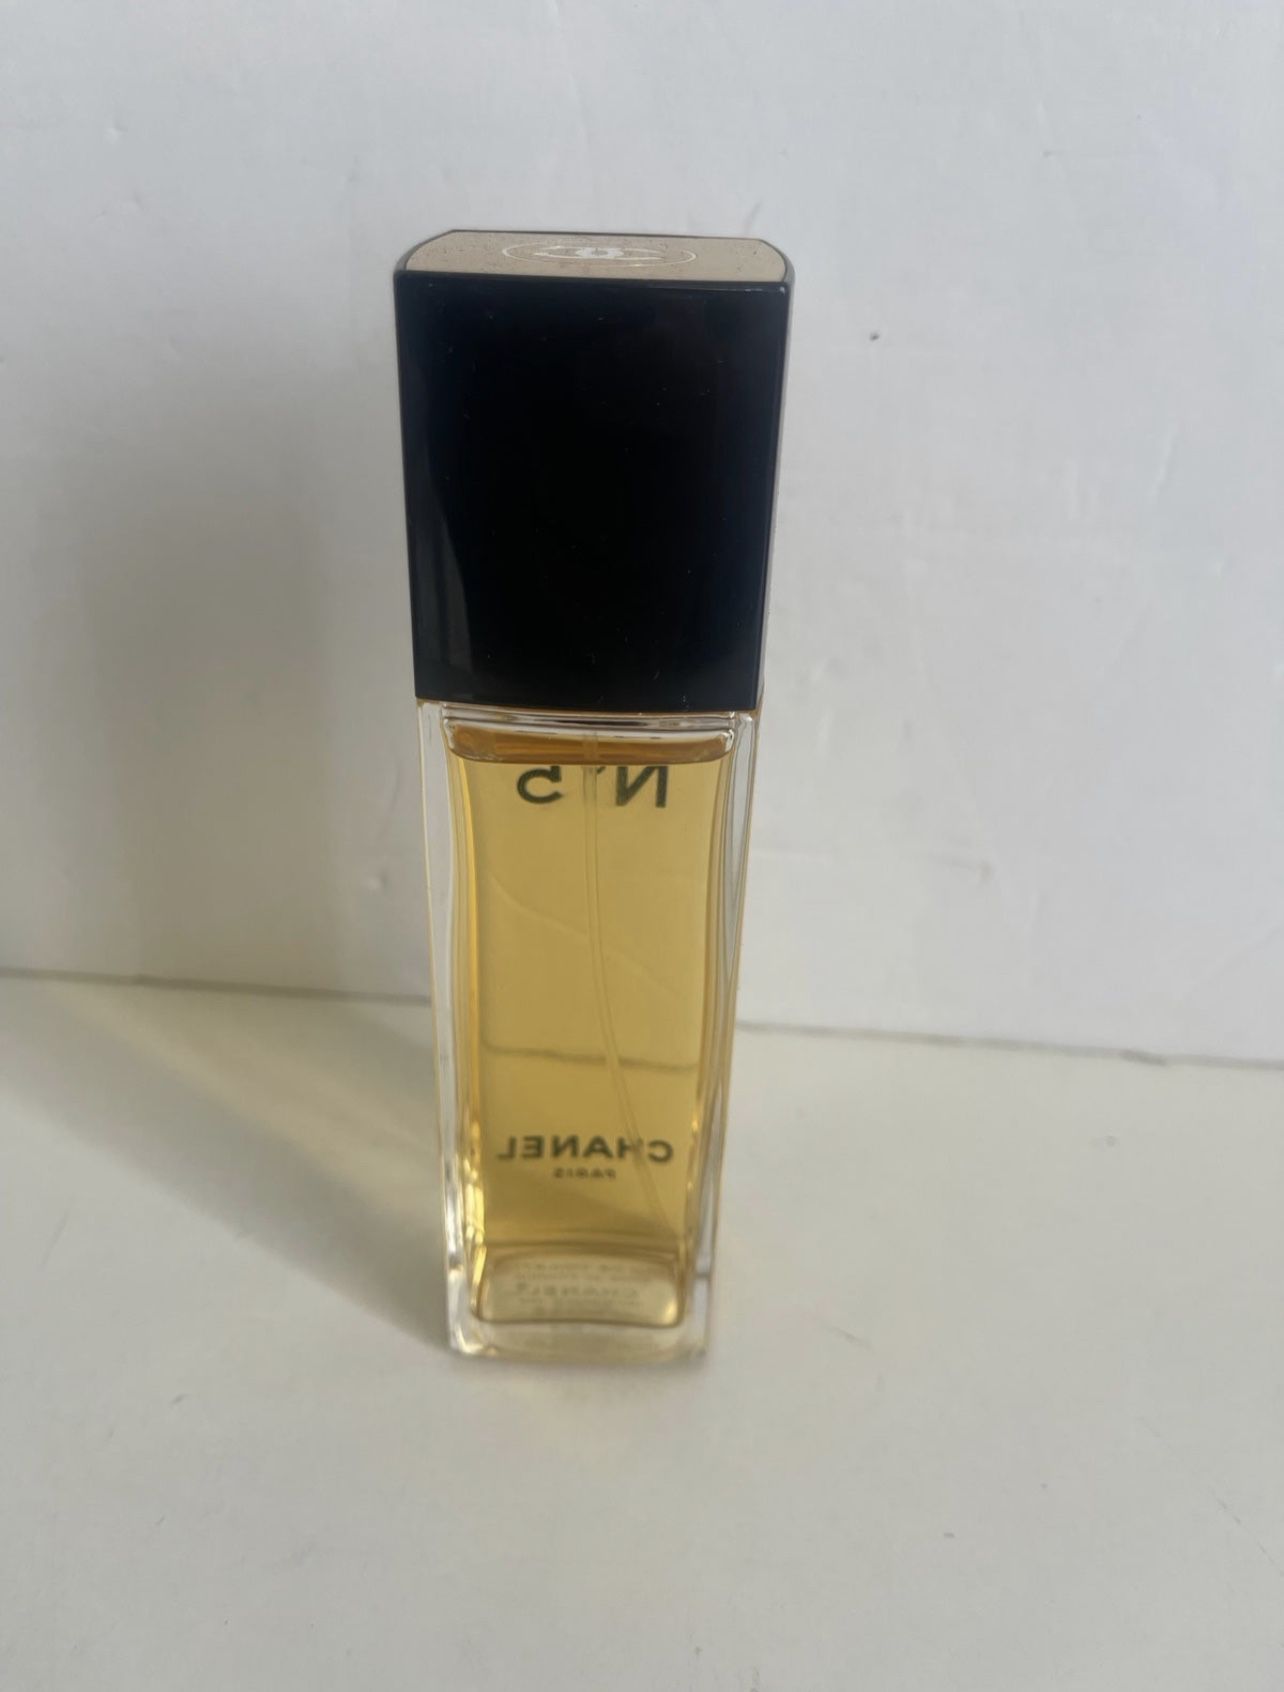 VINTAGE CHANEL NO 5 Parfum De Toilette Spray 1.5oz 80% True Vintage $45.00  - PicClick